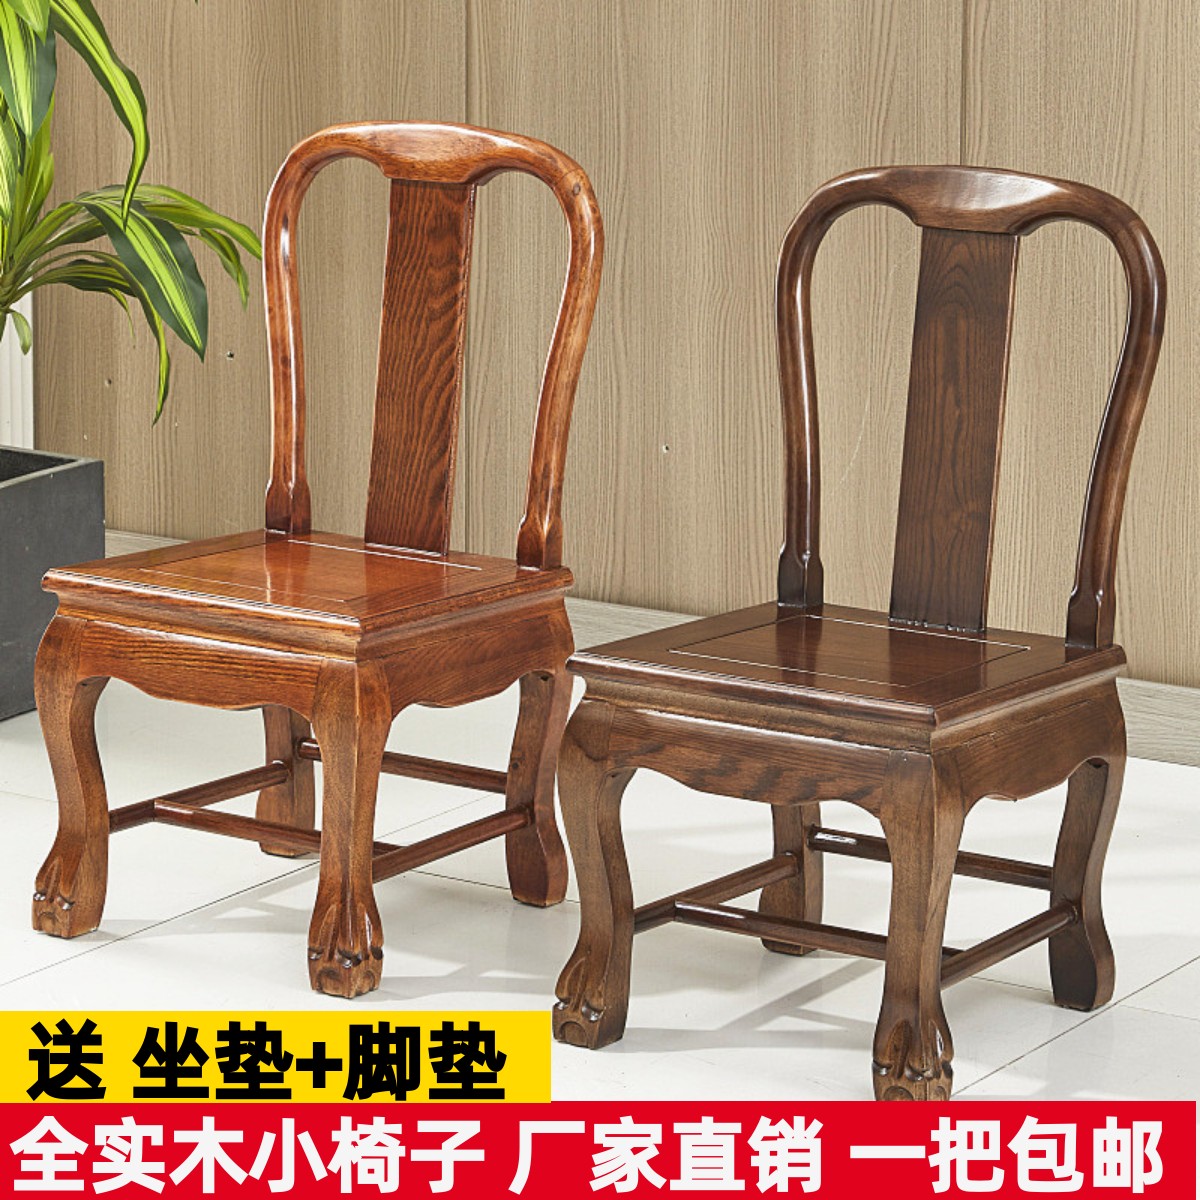 实木小椅子靠背椅小板凳家用红木婚庆椅简约儿童凳客厅茶几子孙凳